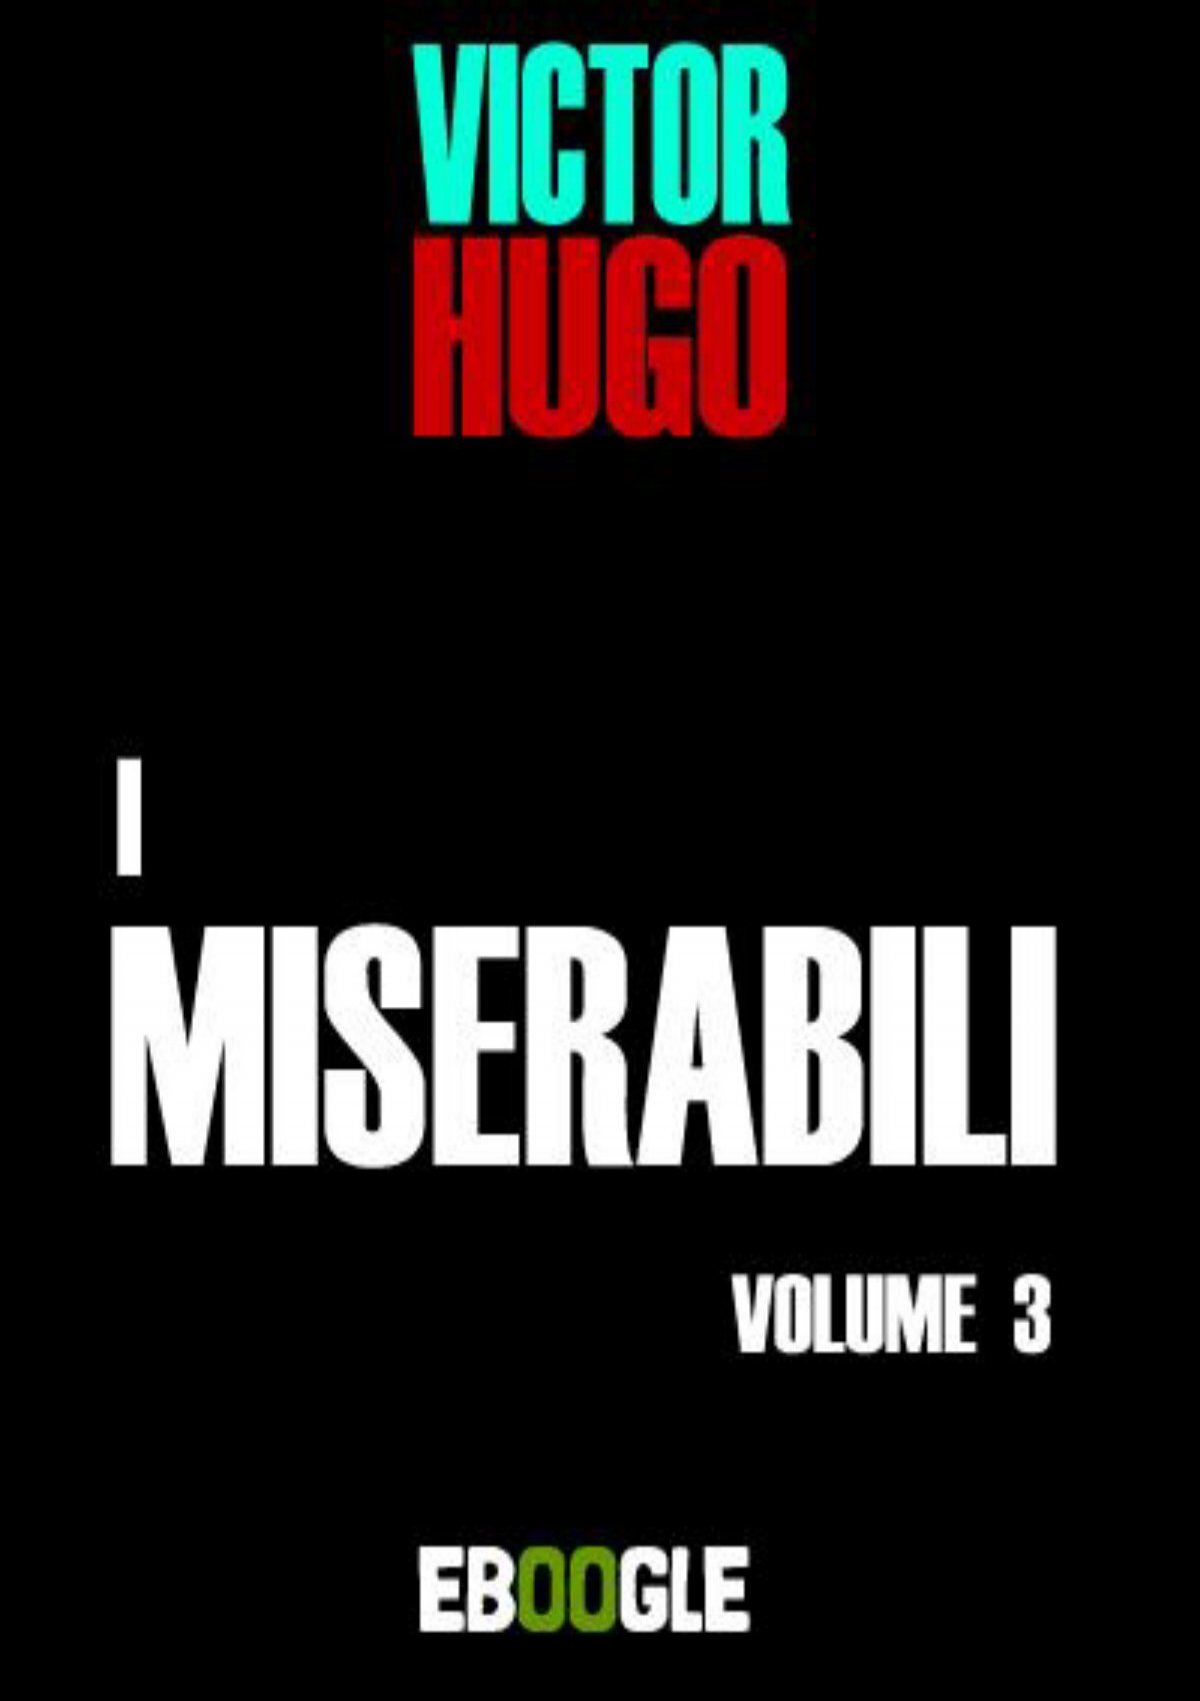 I miserabili ebook Hugo  Il capolavoro che racconta la storia francese